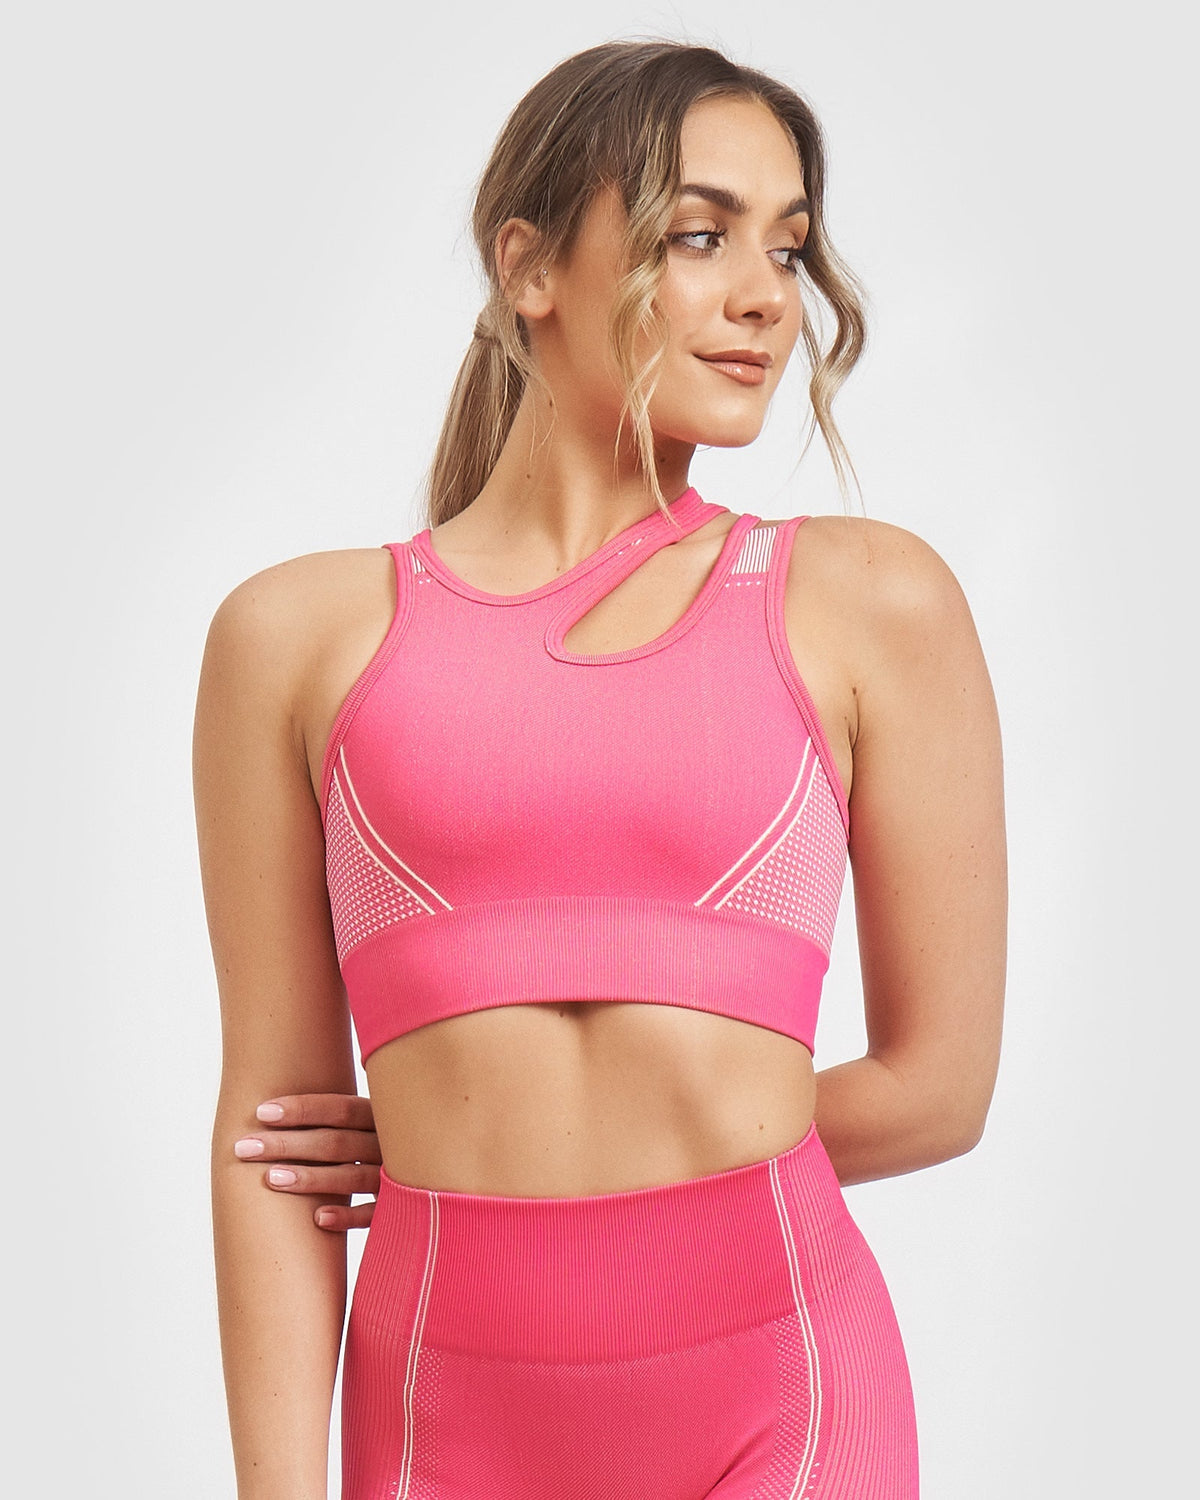 https://www.beactivewear.com.au/cdn/shop/products/core-trainer-activewear-core-trainer-lulu-active-bra-pink-37653979103401_1200x1500.jpg?v=1677407795